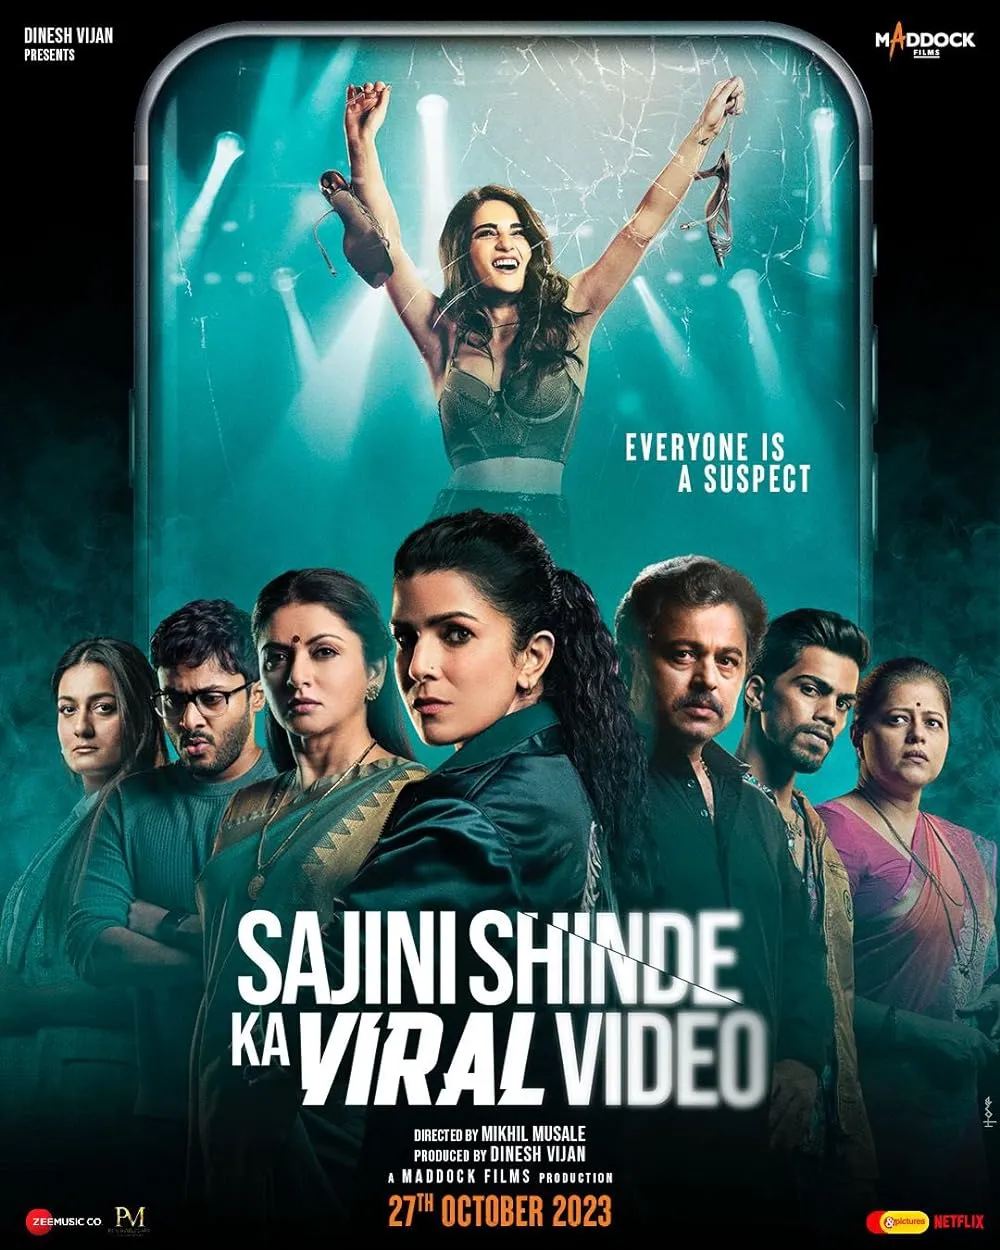 Sajini Shinde Ka Viral Video 2023 Hindi 480p HDRip ESub 350MB Download